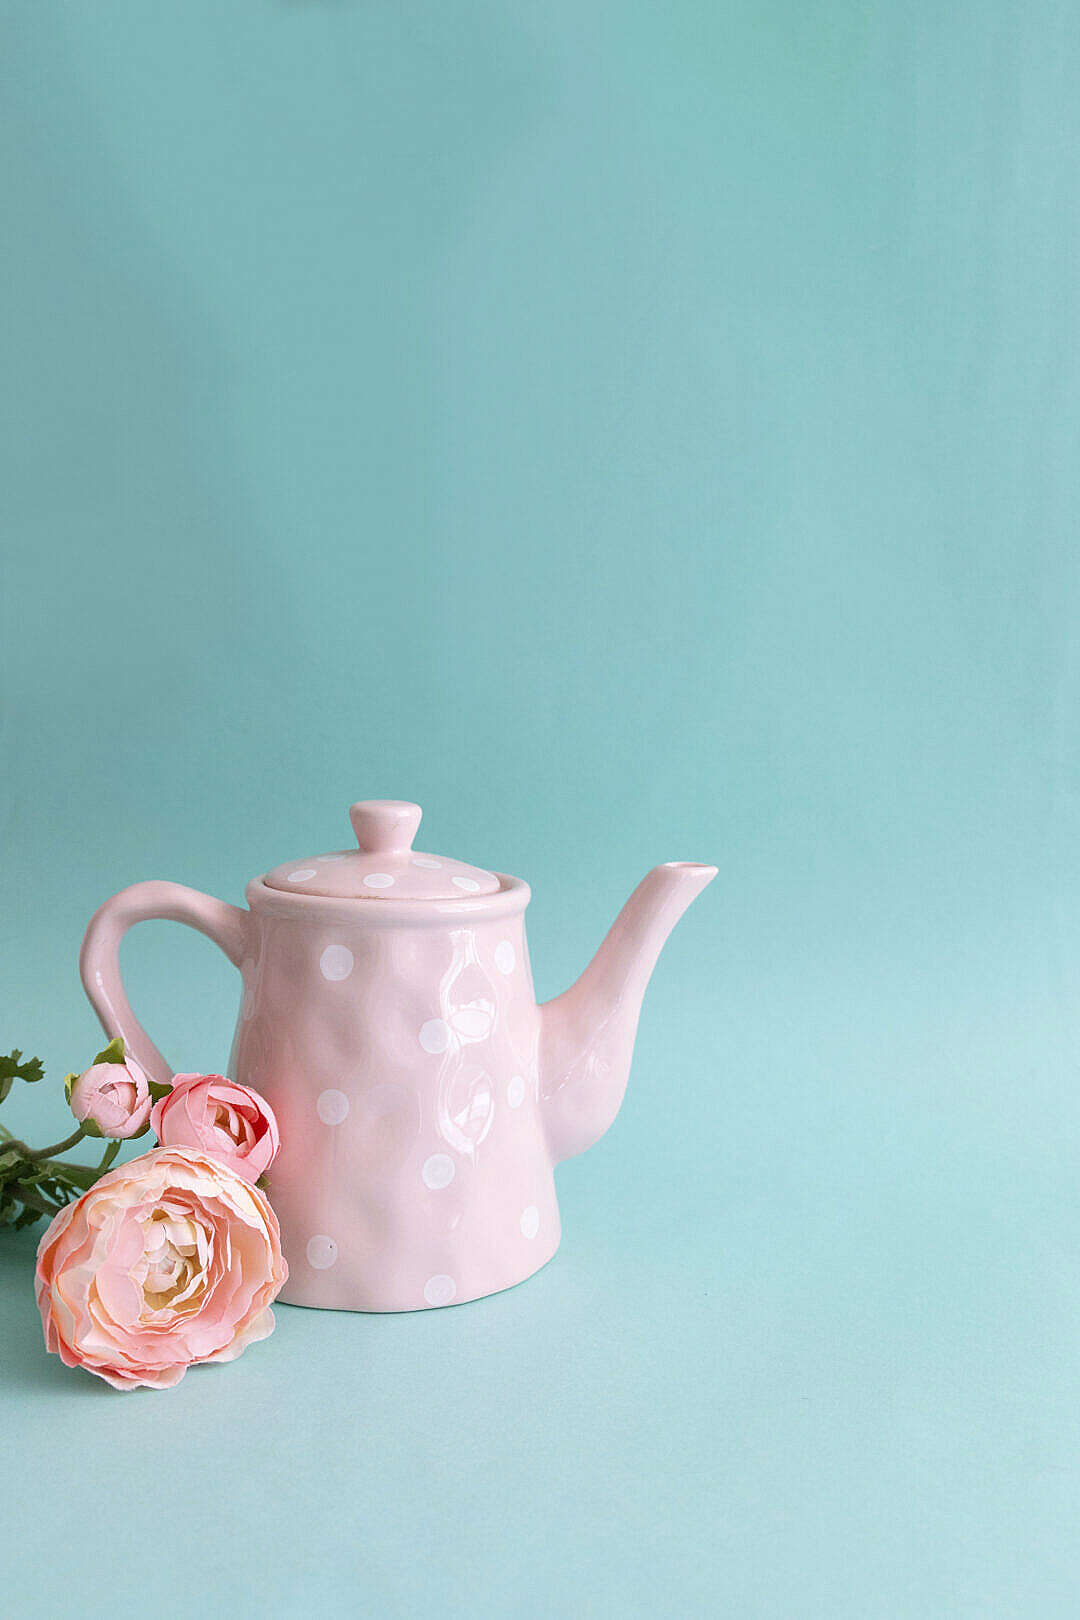 Colorful Vintage Teapot Tea Time